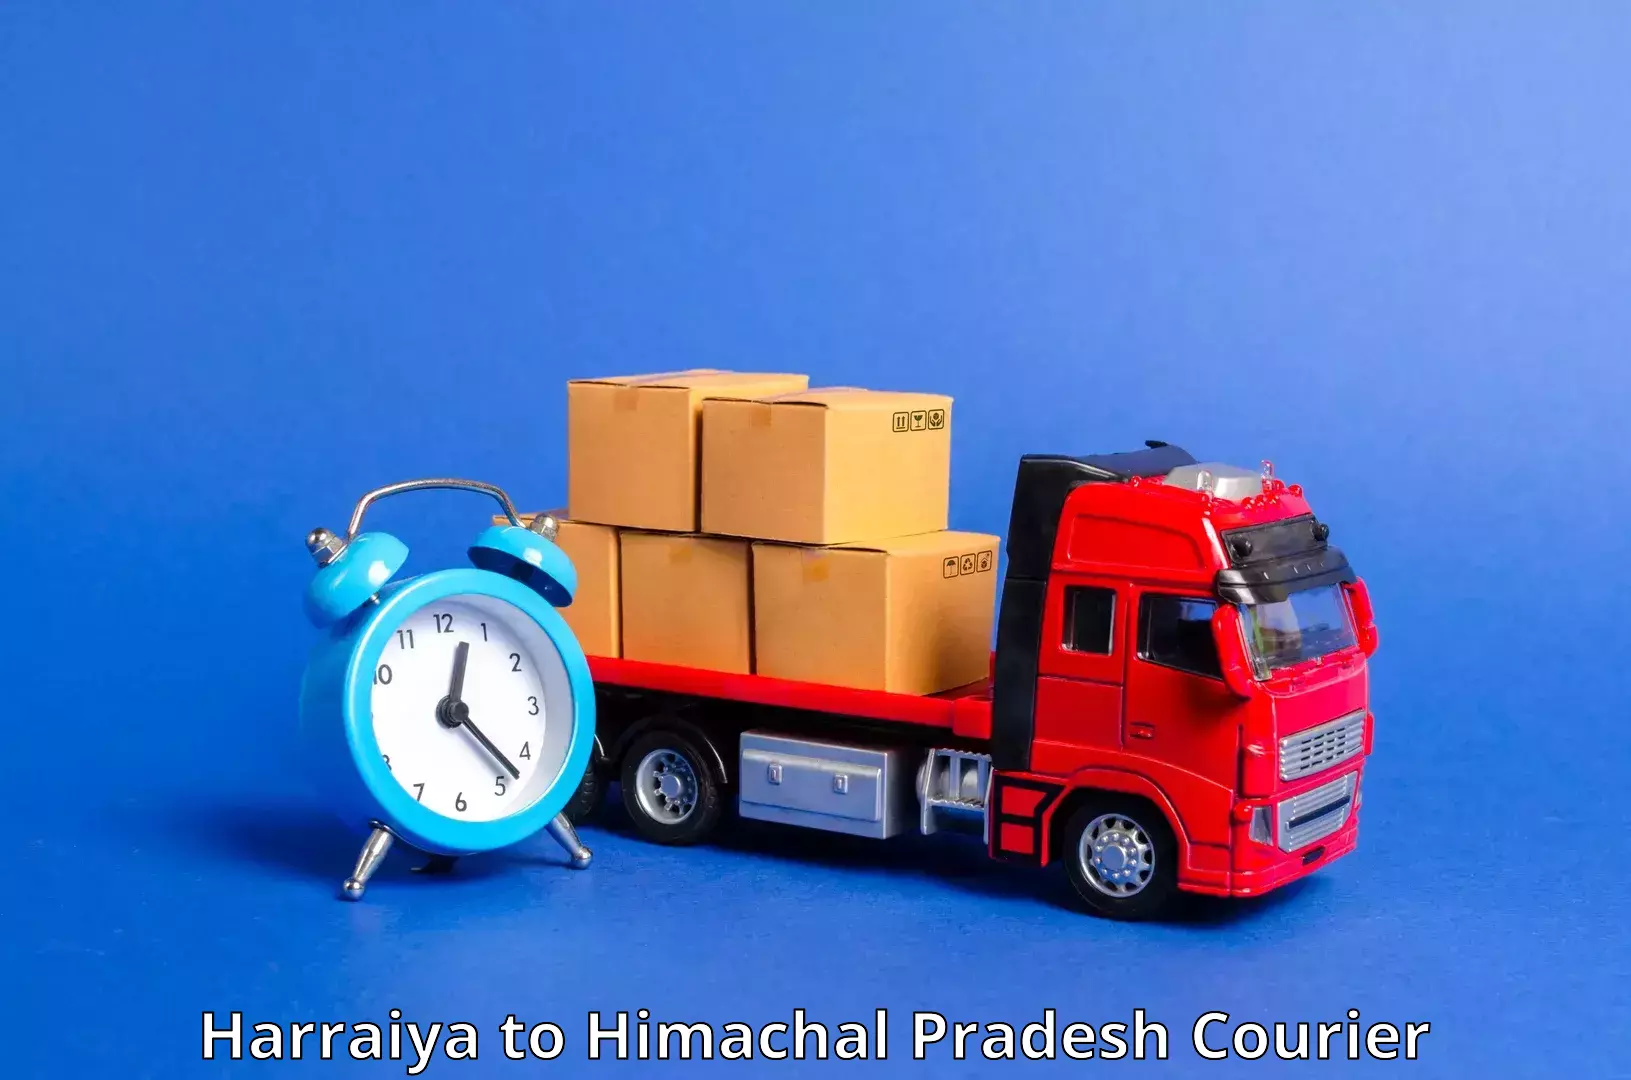 Urgent courier needs Harraiya to Sundla